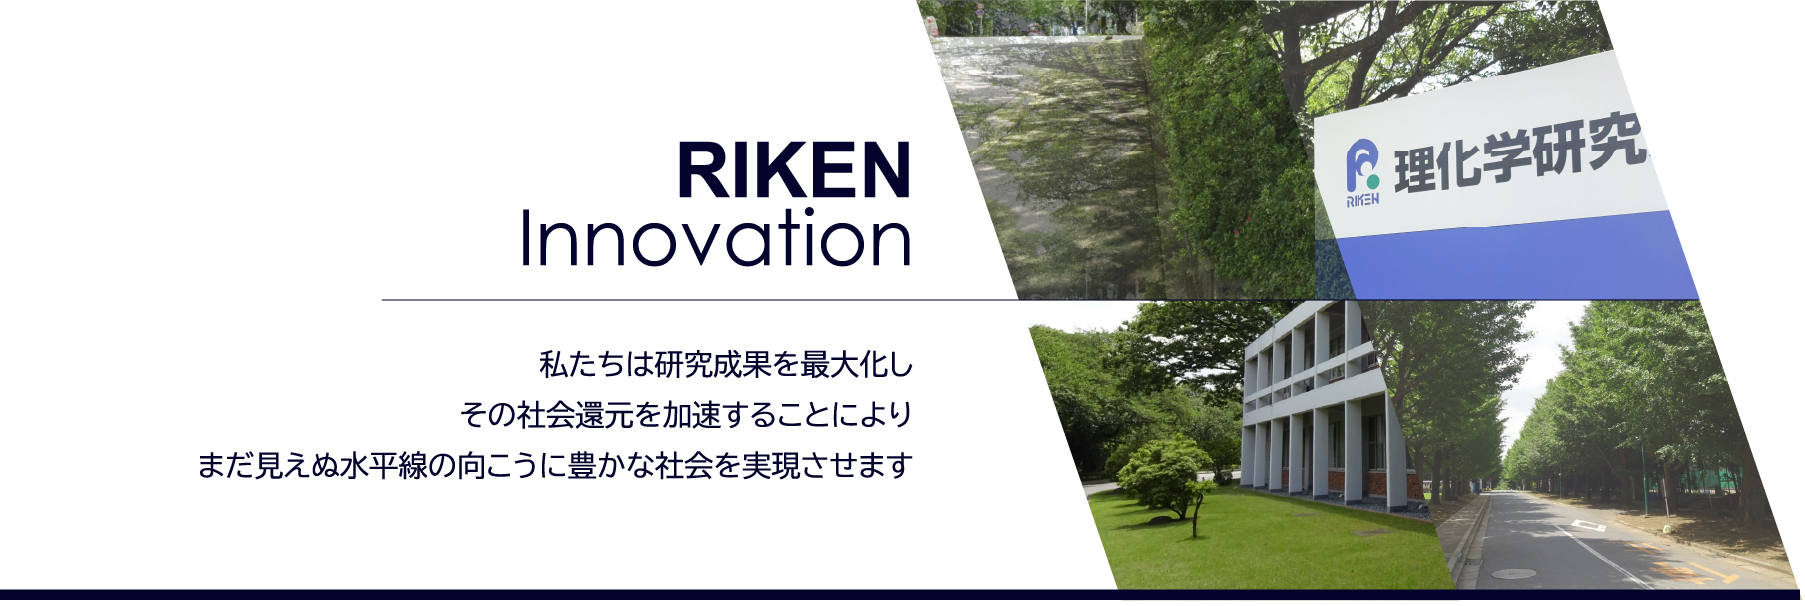 株式会社理研鼎業 – RIKEN Innovation Co., Ltd.